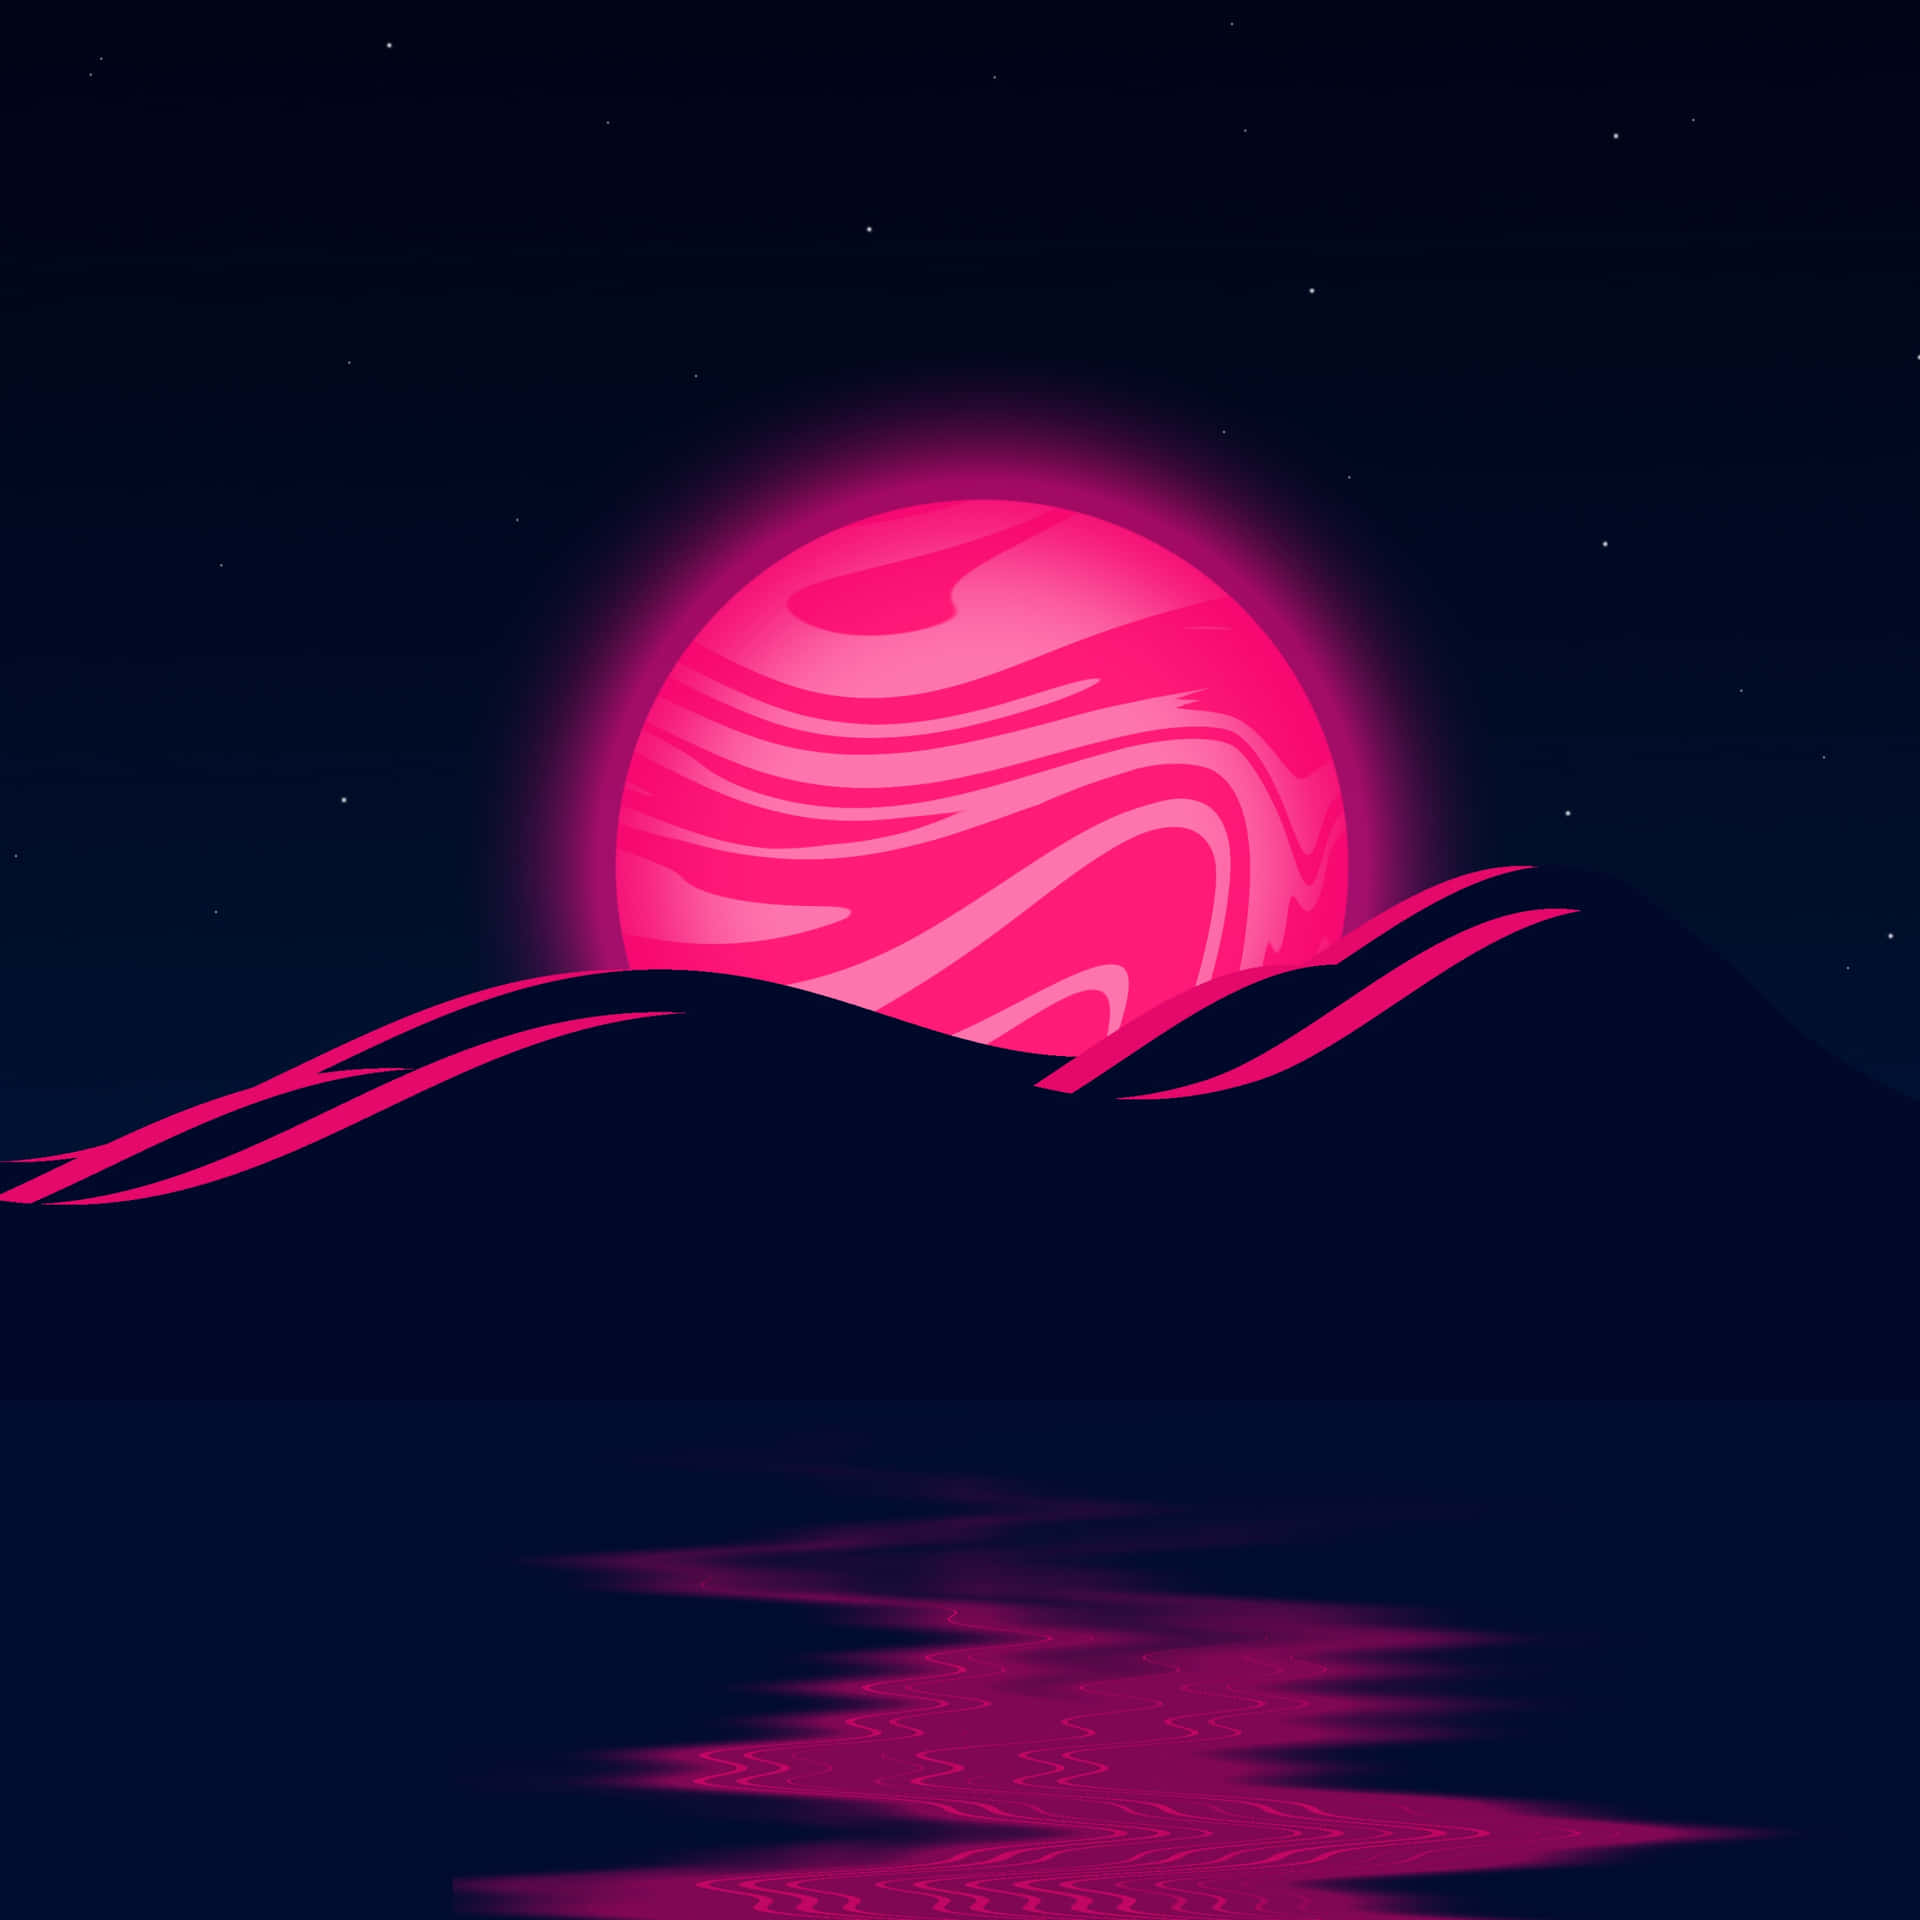 Unavibrante Superluna Rosa Ilumina El Cielo Nocturno. Fondo de pantalla